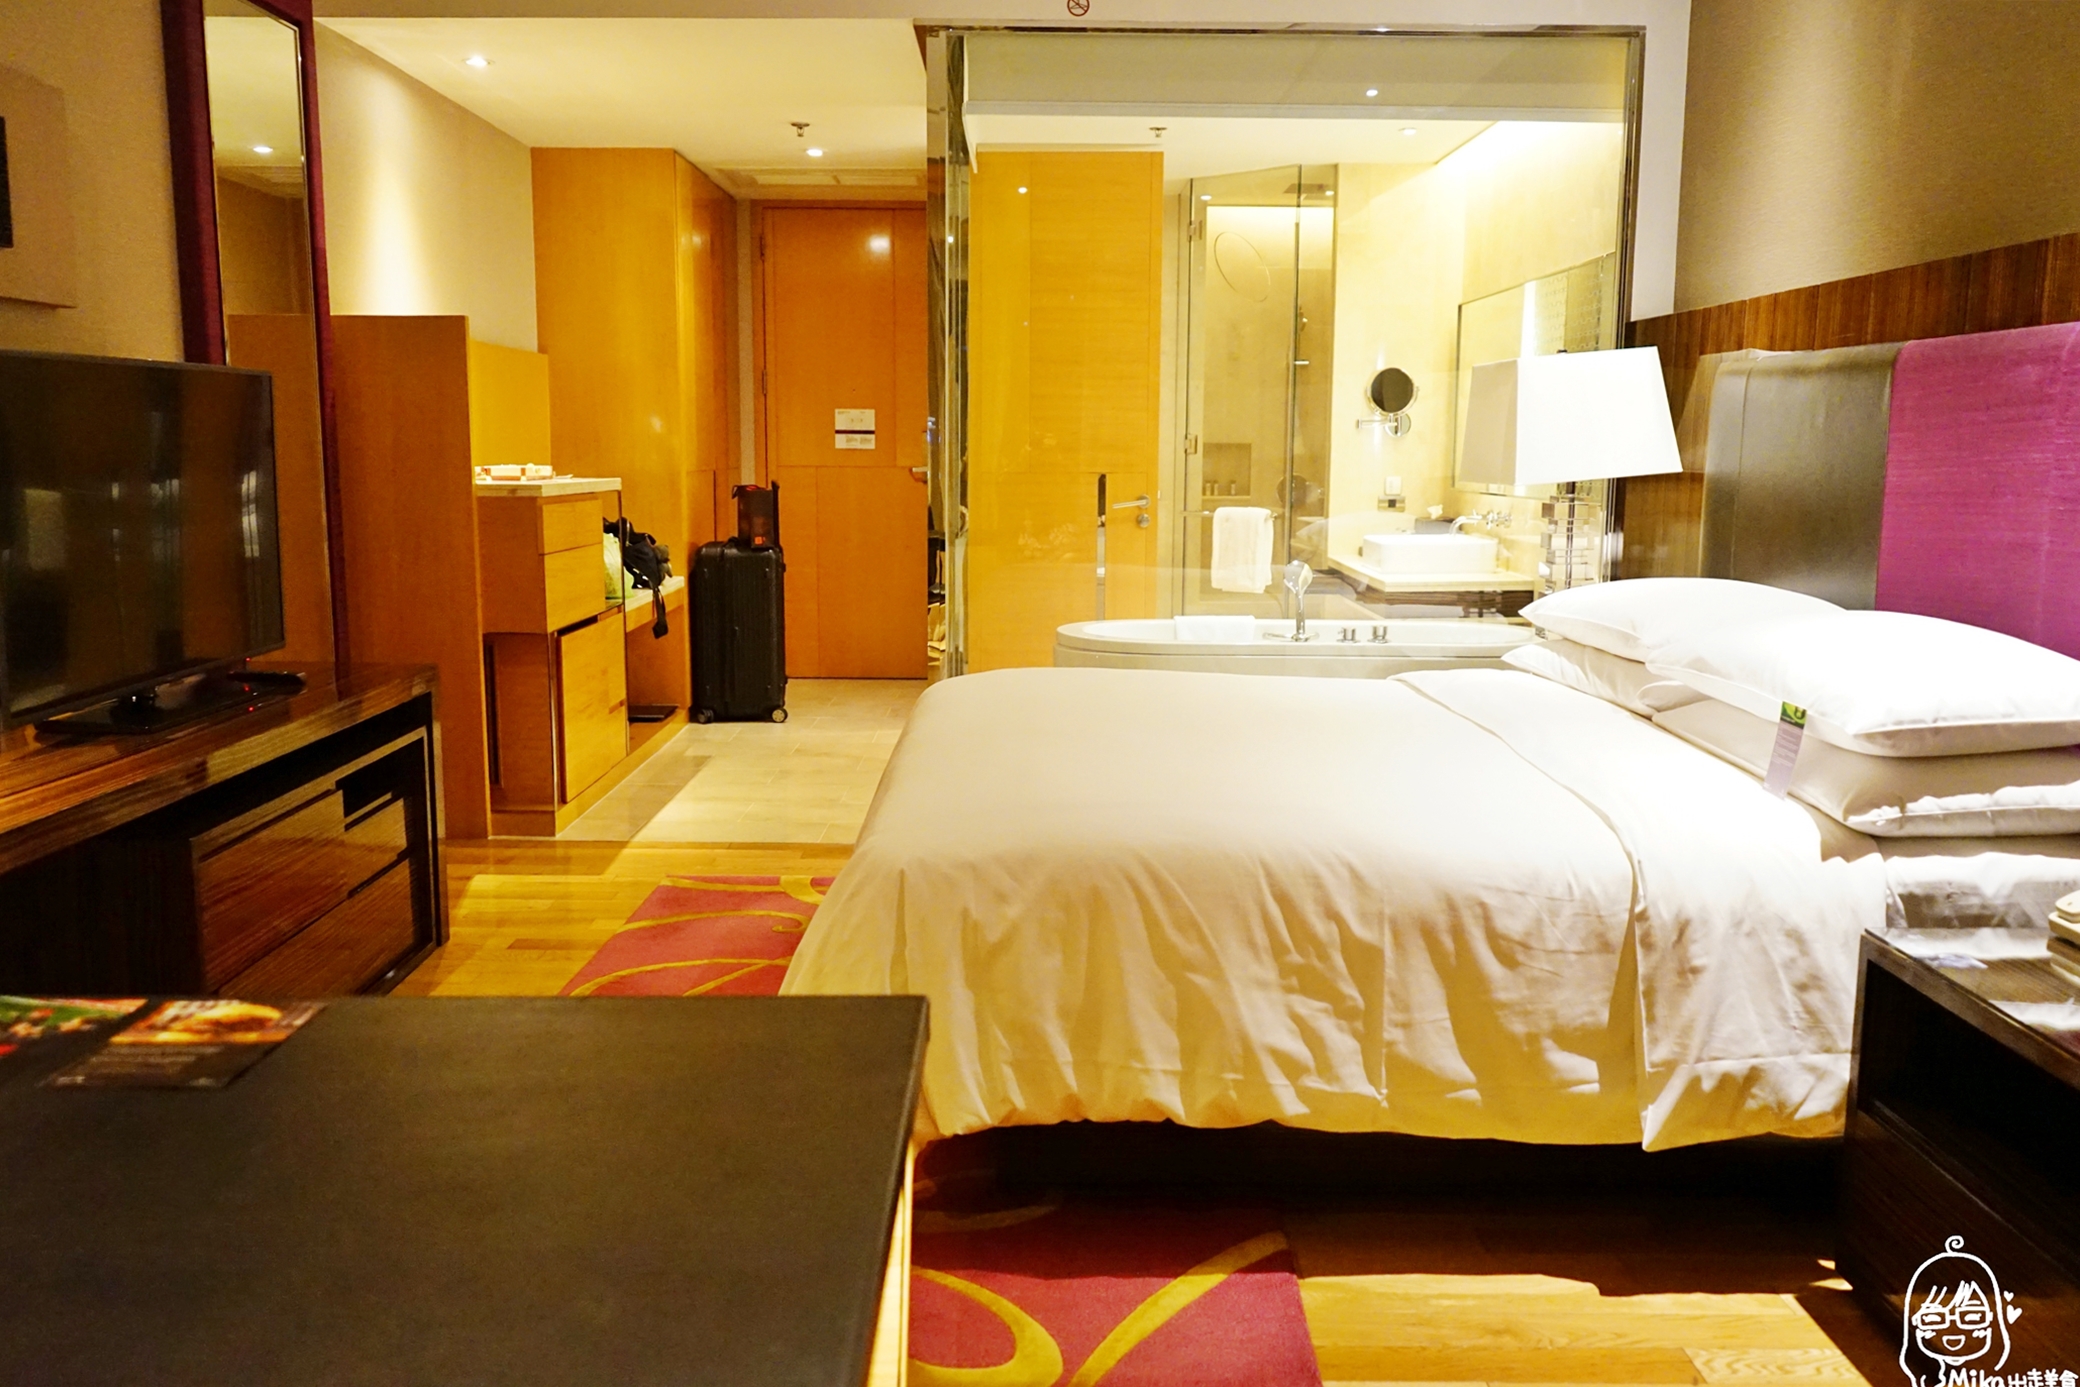 延伸閱讀：『泰國。曼谷』五星級 萬麗酒店 Renaissance BKK｜BTS奇隆站附近推薦住宿 超級精華地段 平價CP值超高 鄰近Central World Plaza、四面佛、Big C，還提供免費擦鞋服務。